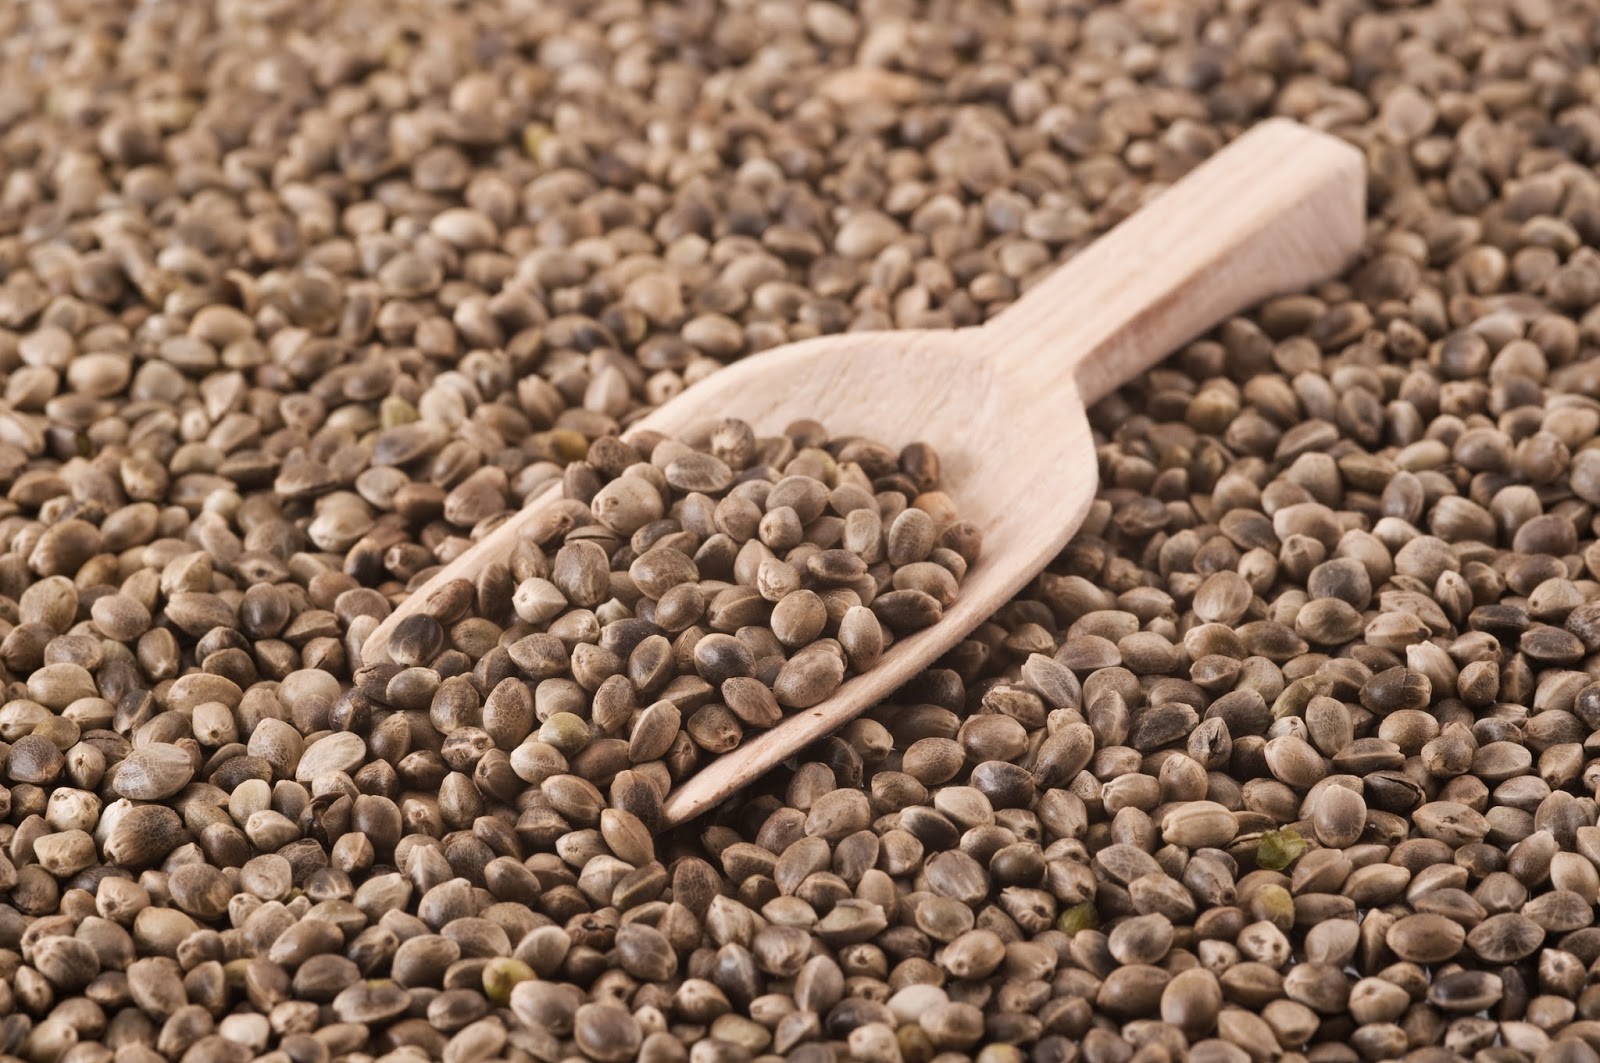 Seed семена конопляные конопля содержится